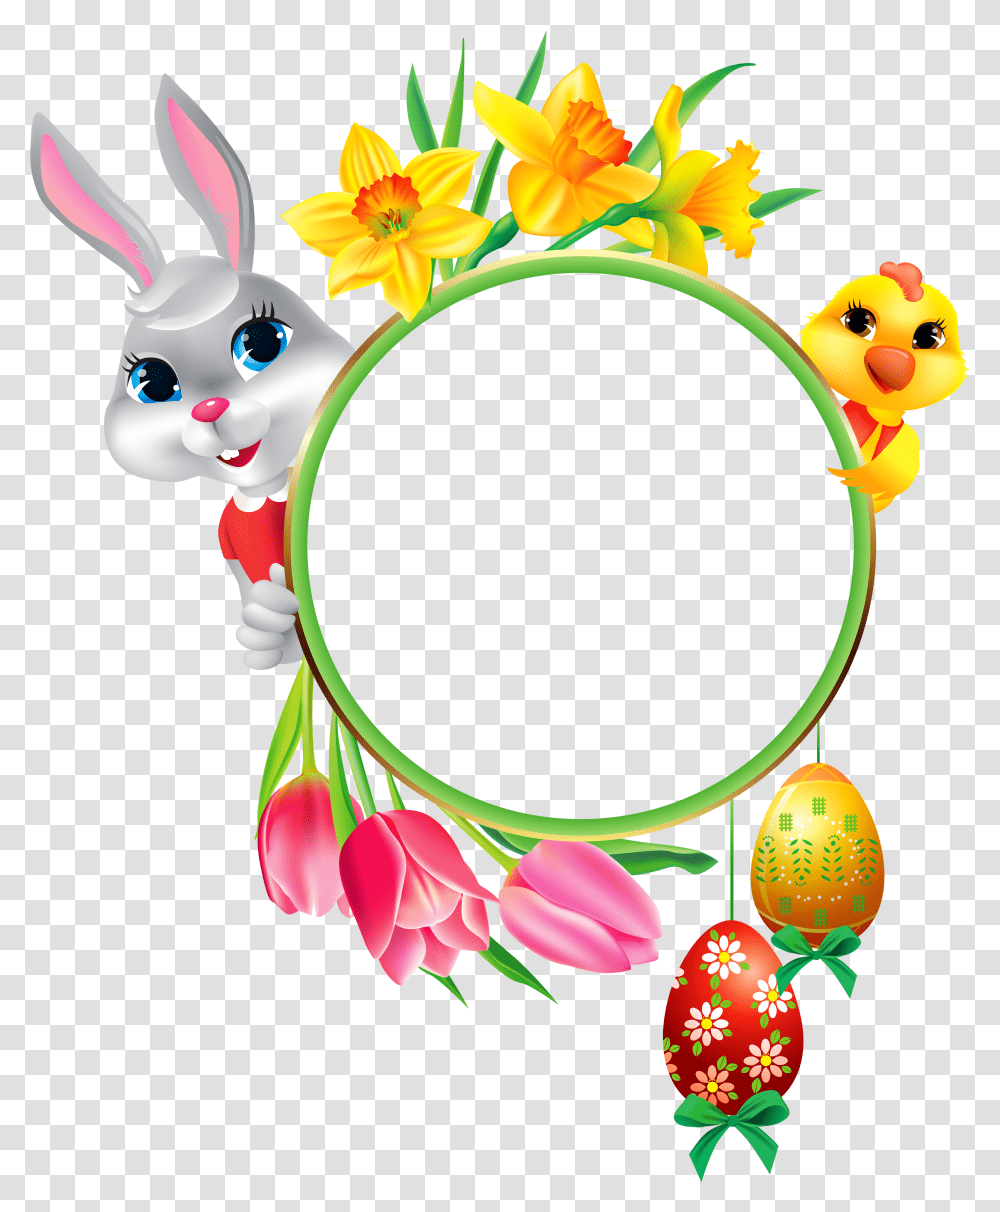 Free Easter Cliparts Frame Download Easter Frames For Facebook, Graphics, Egg, Food, Floral Design Transparent Png